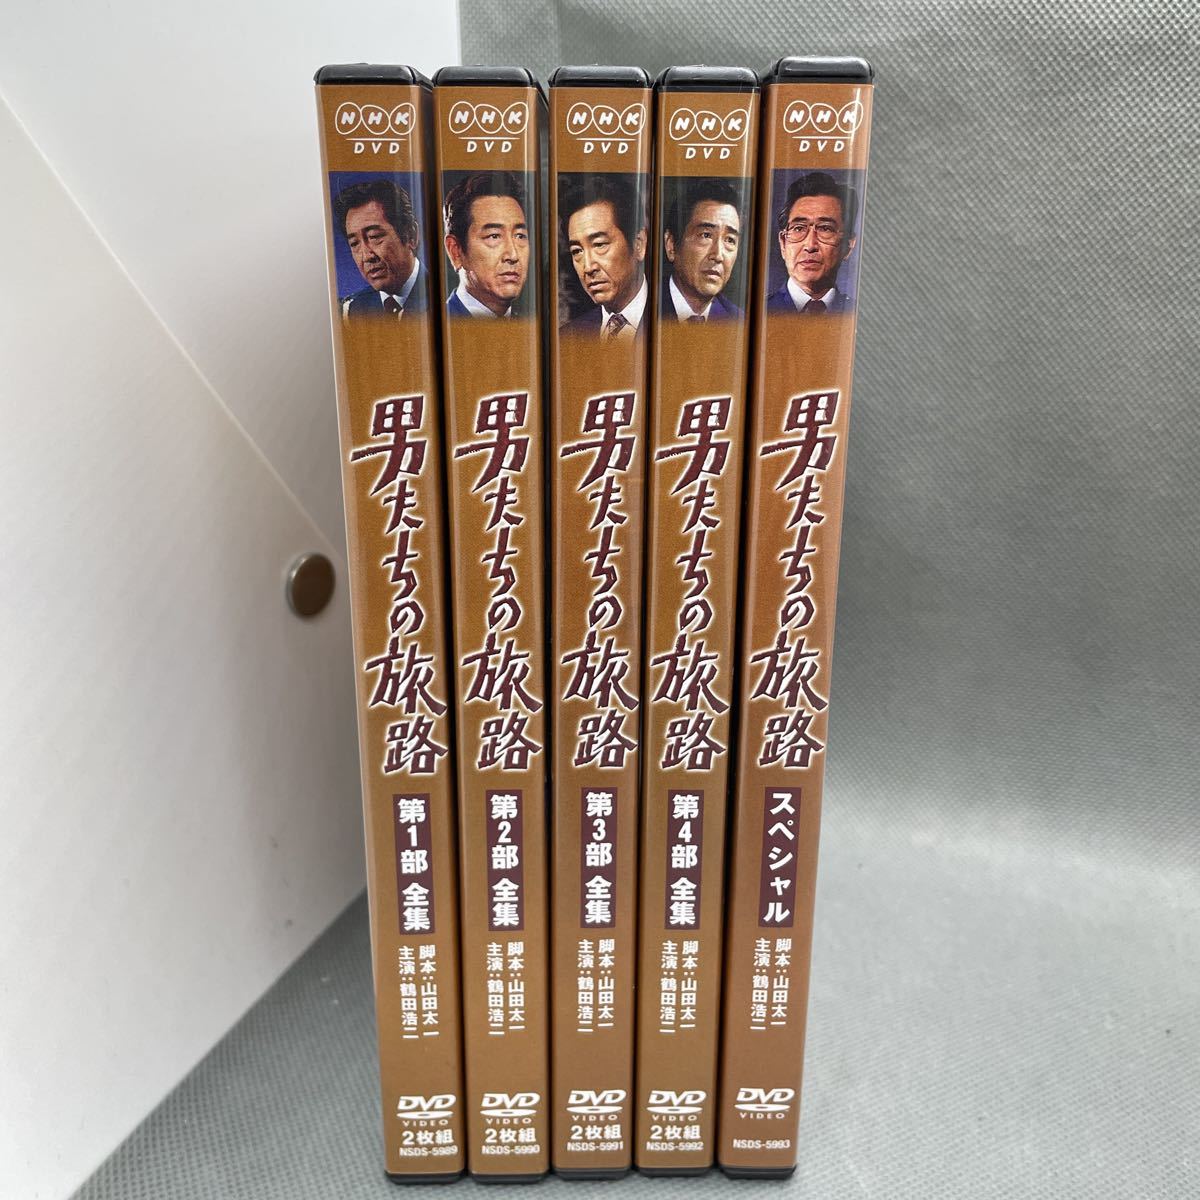 鶴田浩二 NHK ドラマ 男たちの旅路 車輪の一歩 清水健太郎 - DVD